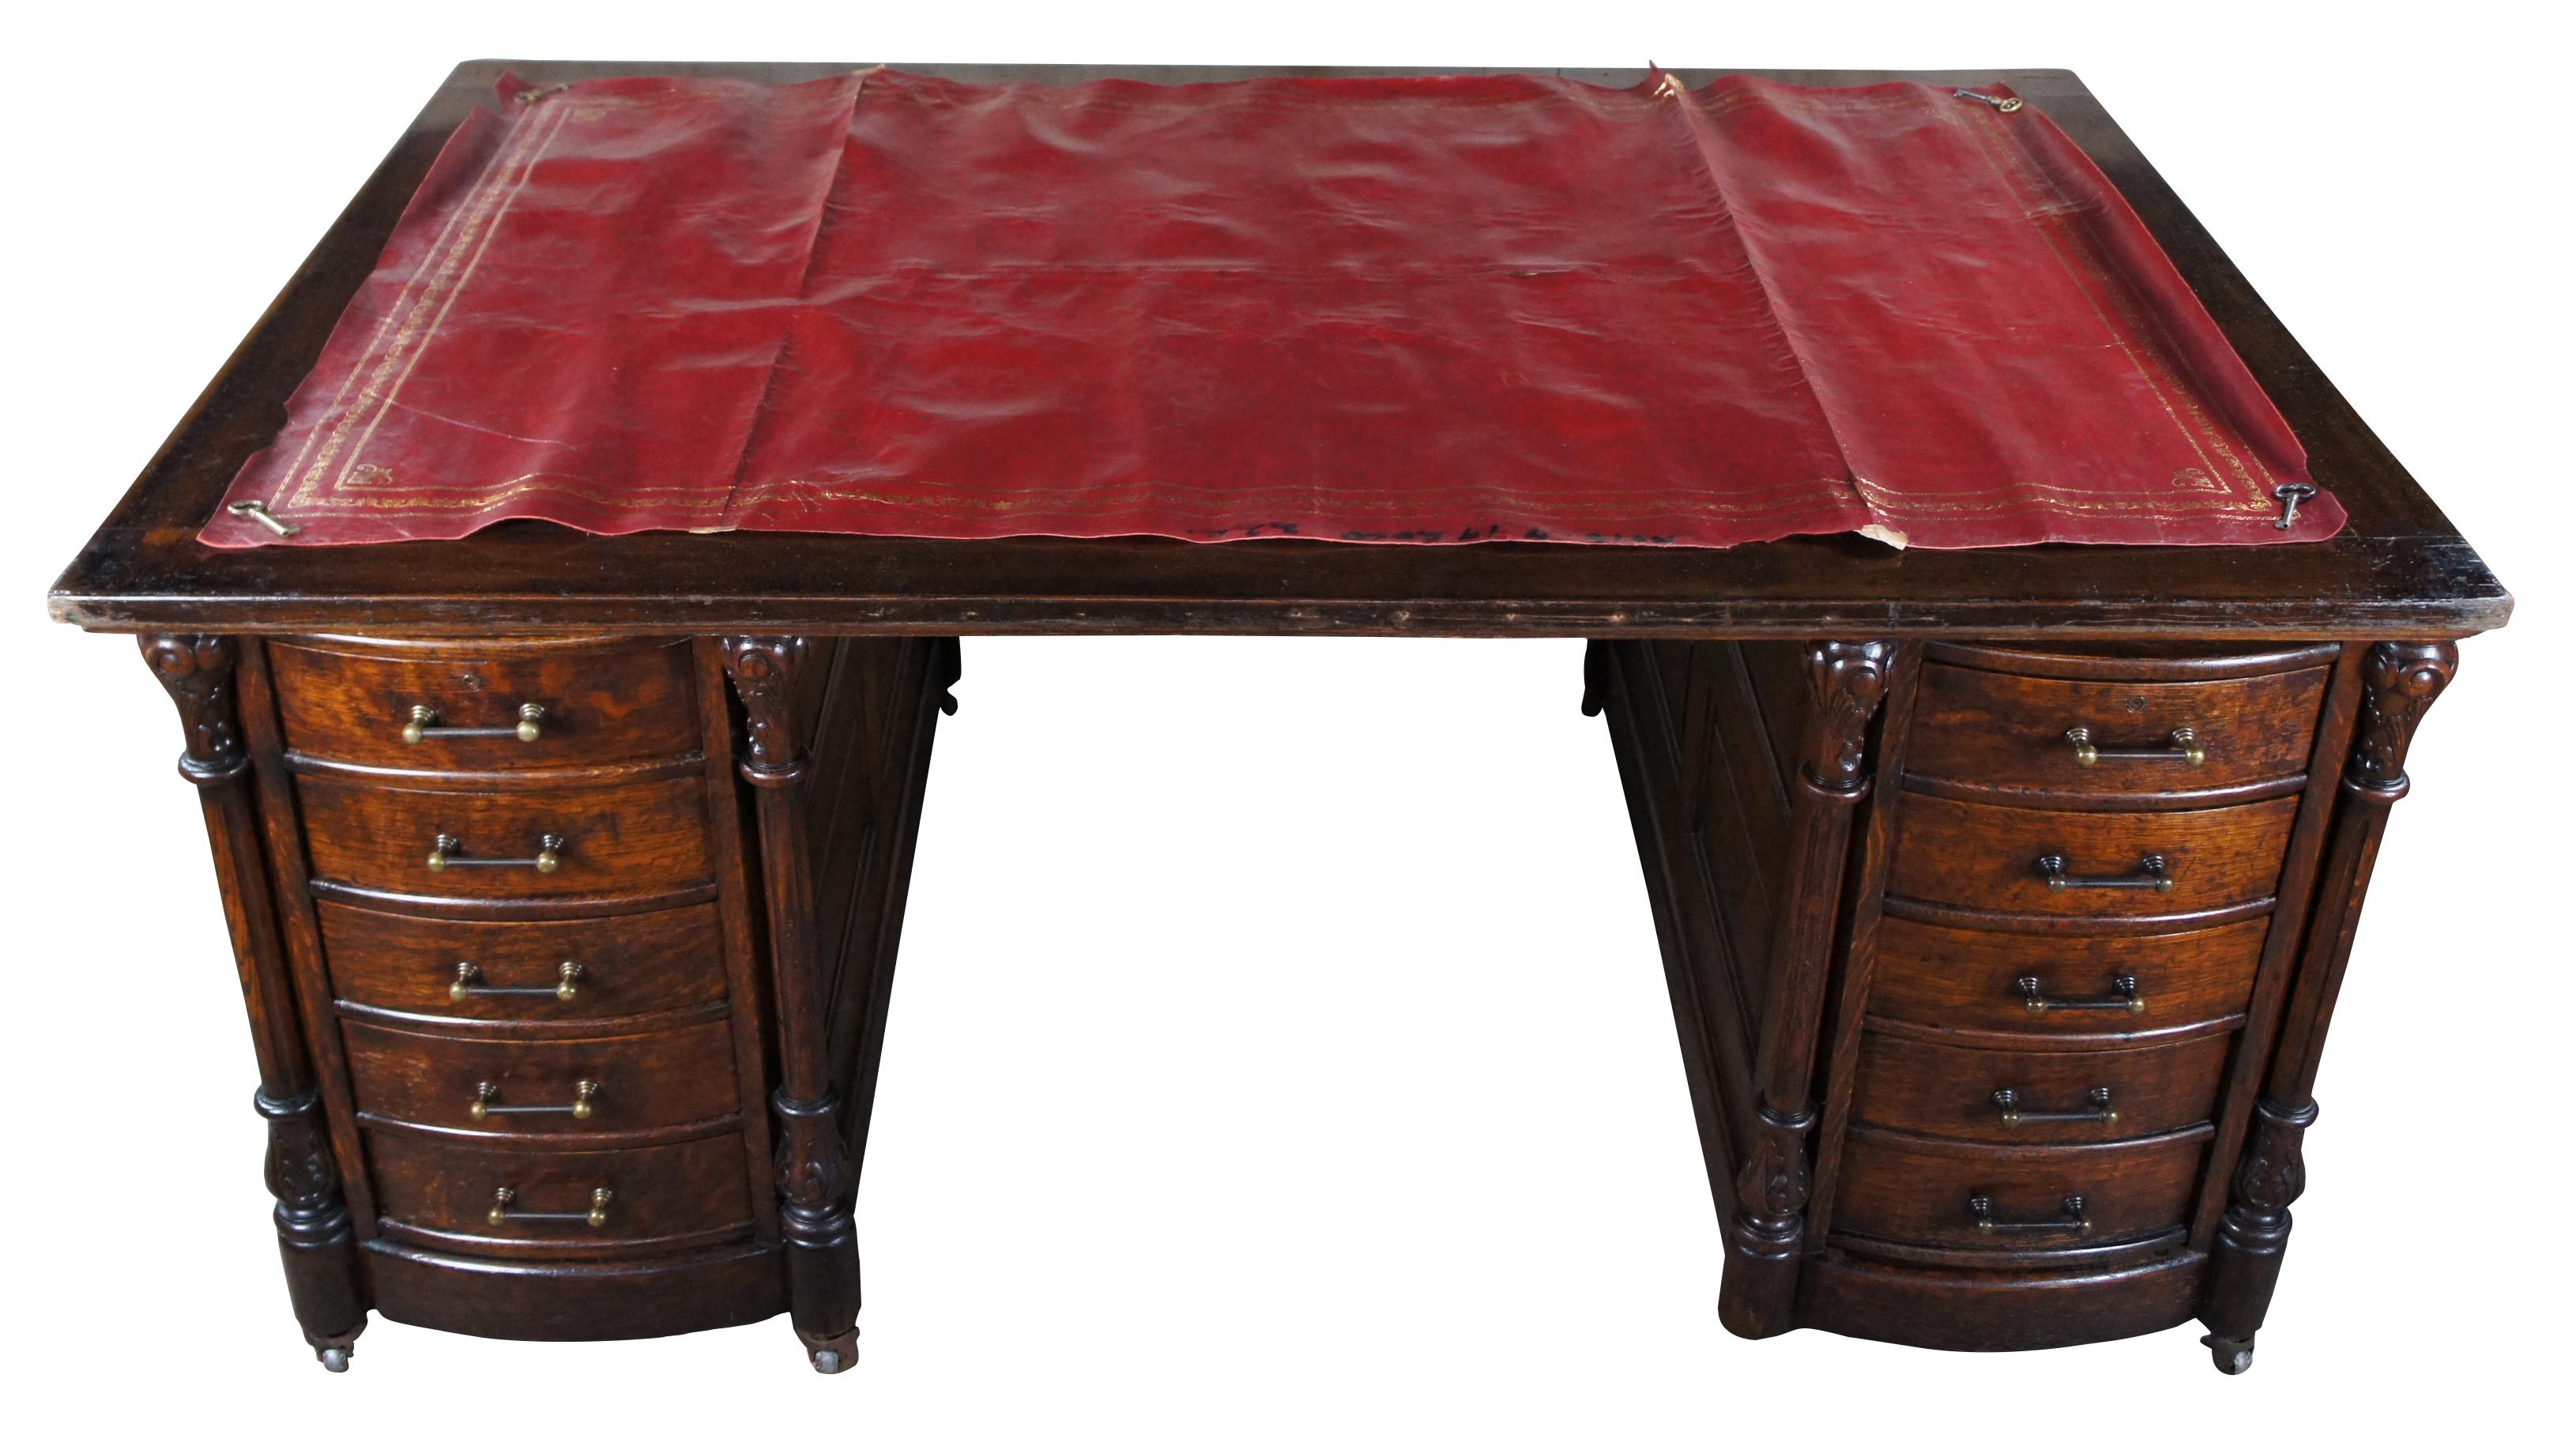 Antikes rotes oder bordeauxfarbenes Leder als Schreibunterlage für den Schreibtisch / Tisch. In den 1980er Jahren in London gekauft.  Maße: 41